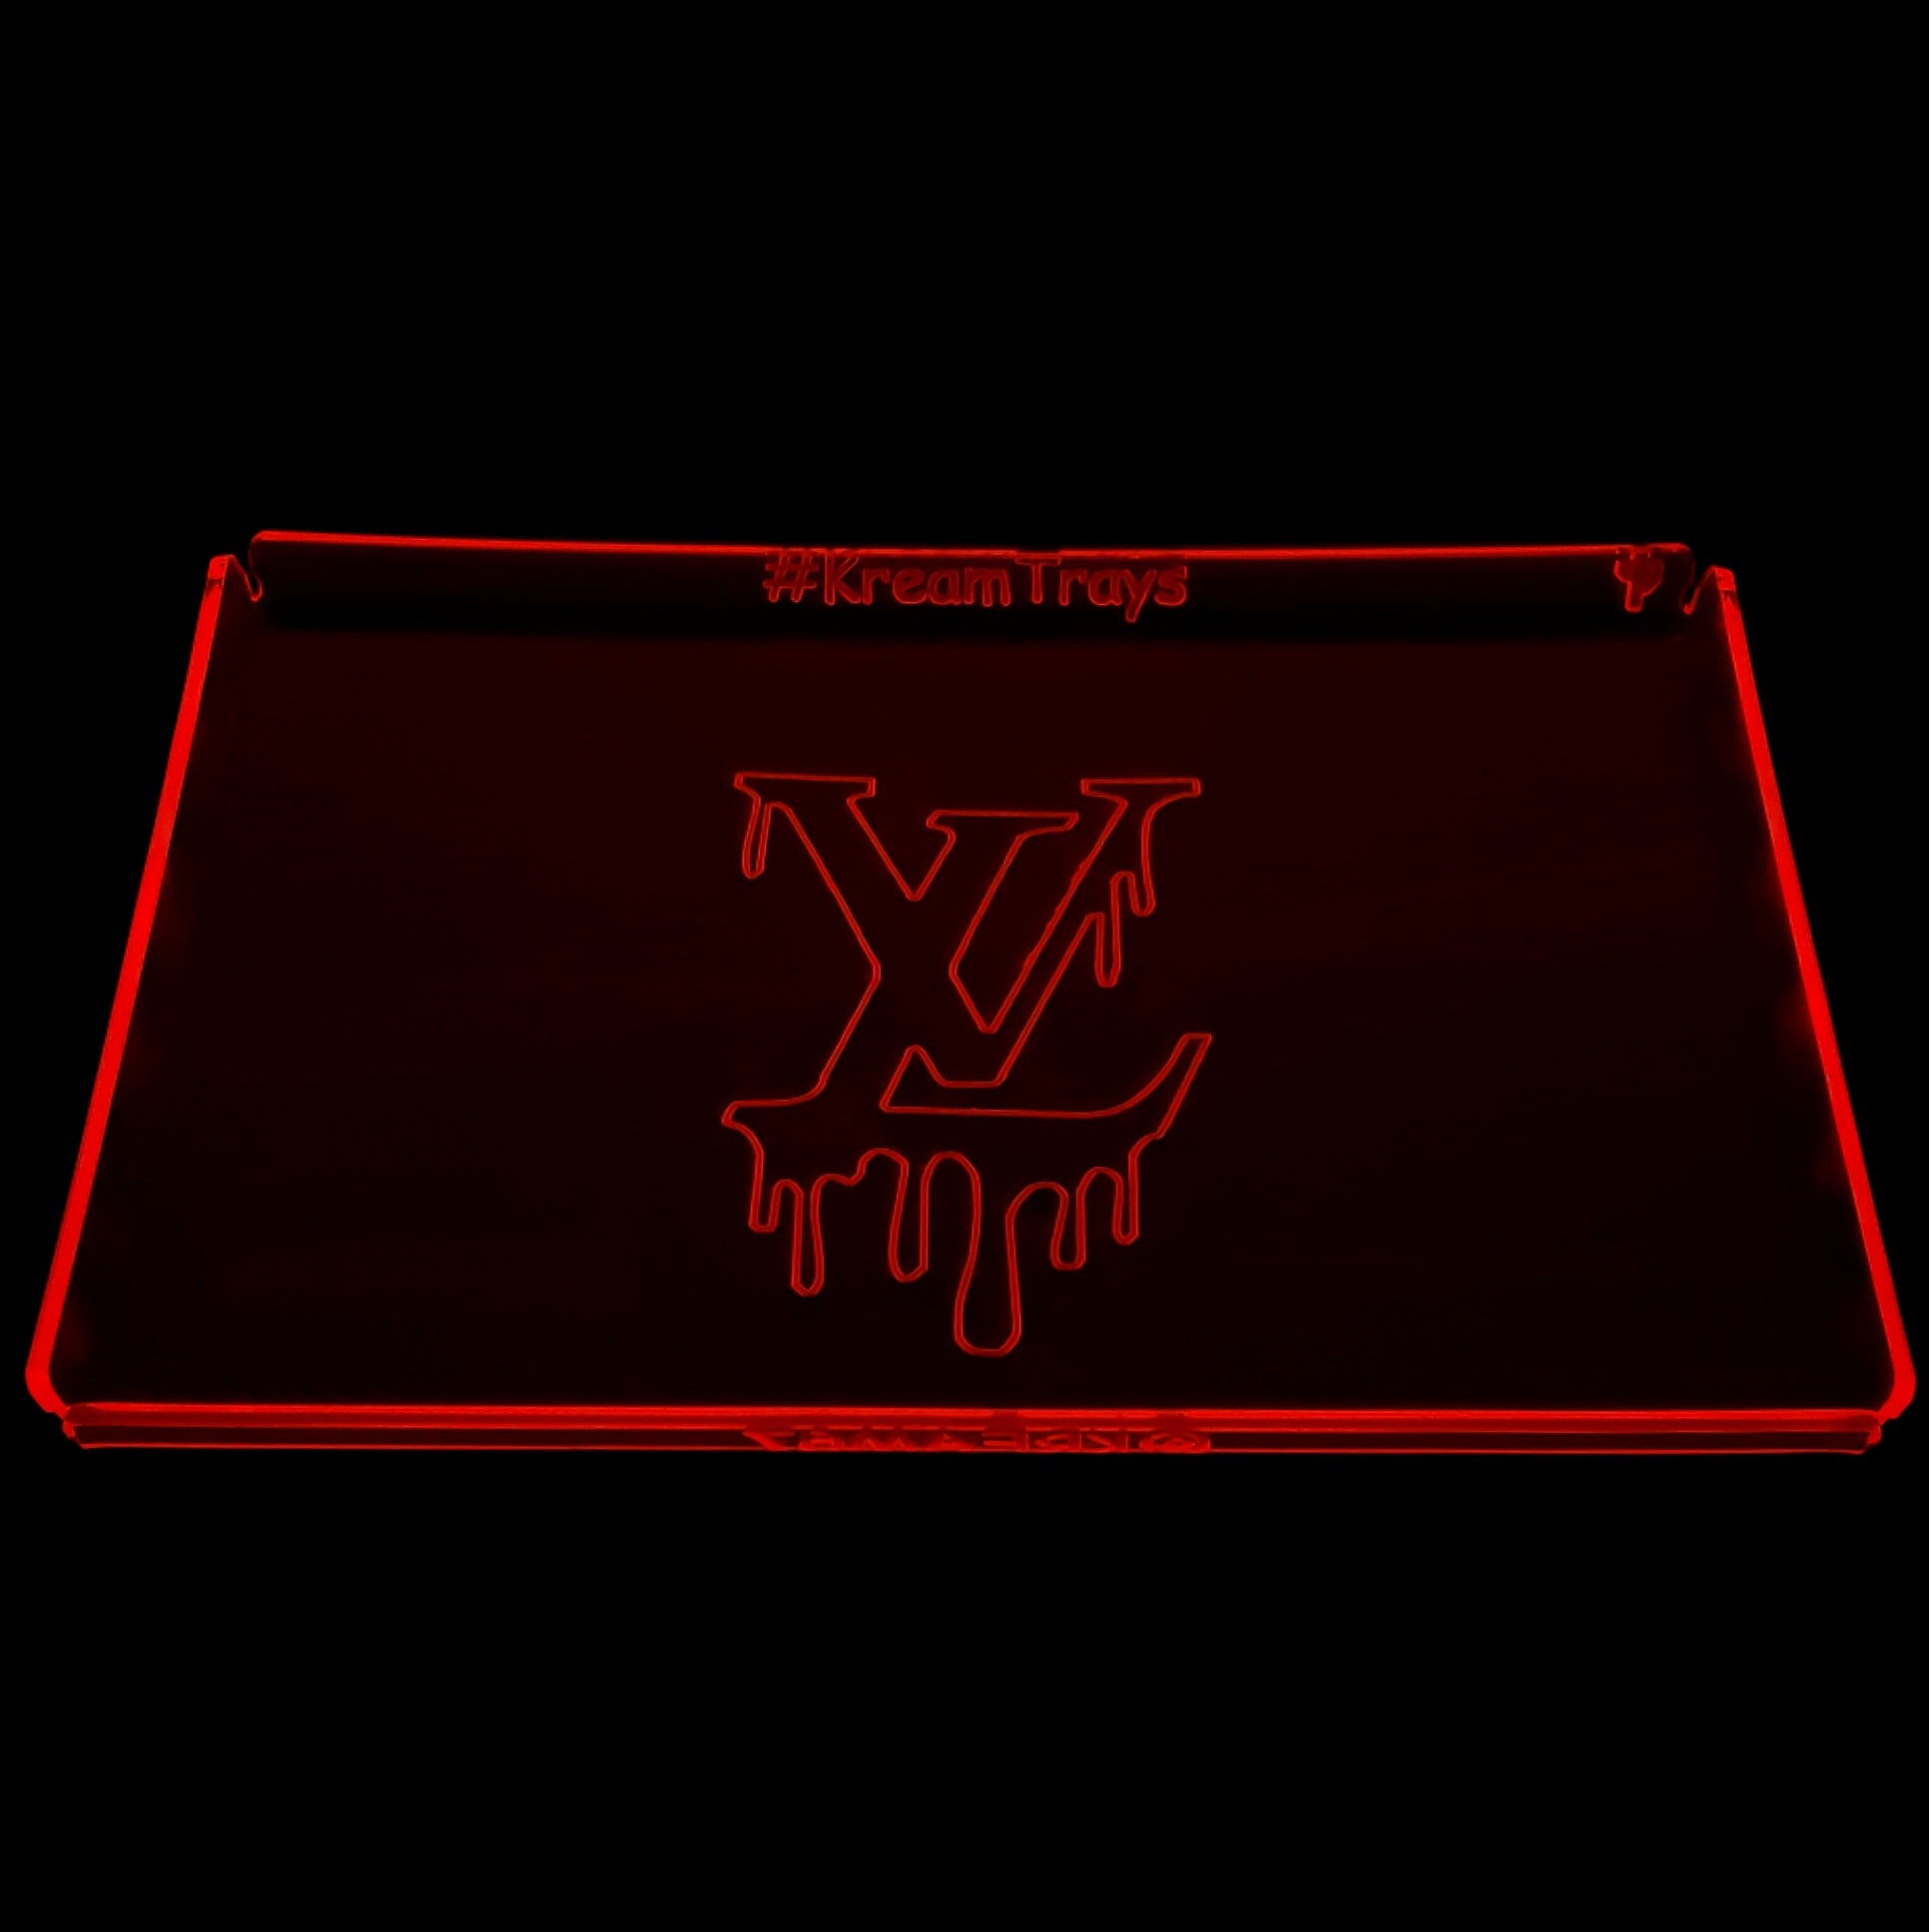 Louis Vuitton Neon Sign